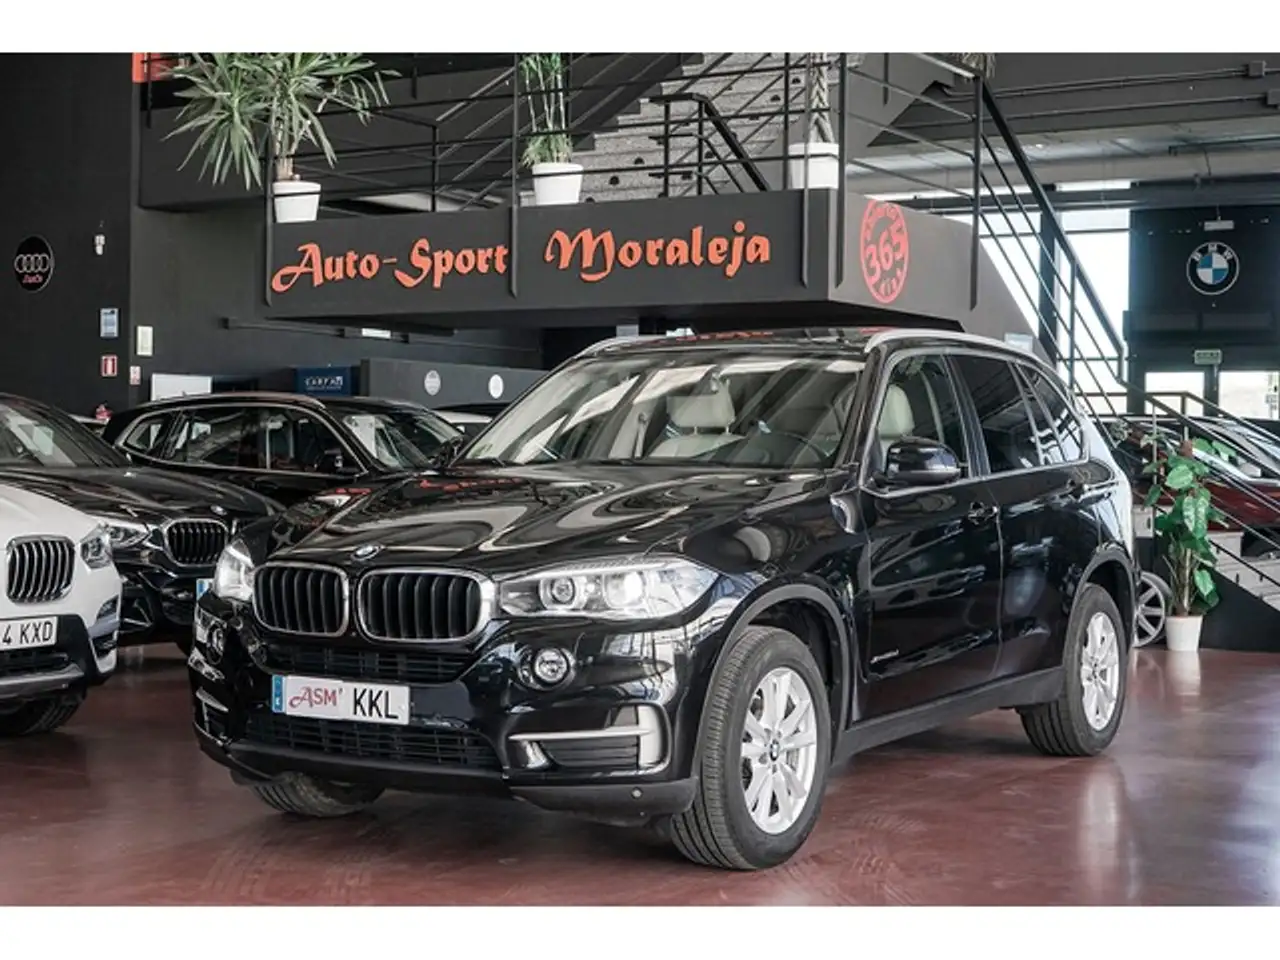 BMW X5 SUV/4x4/Pick-up in Zwart tweedehands in ARROYOMOLINOS voor € 32.900,-